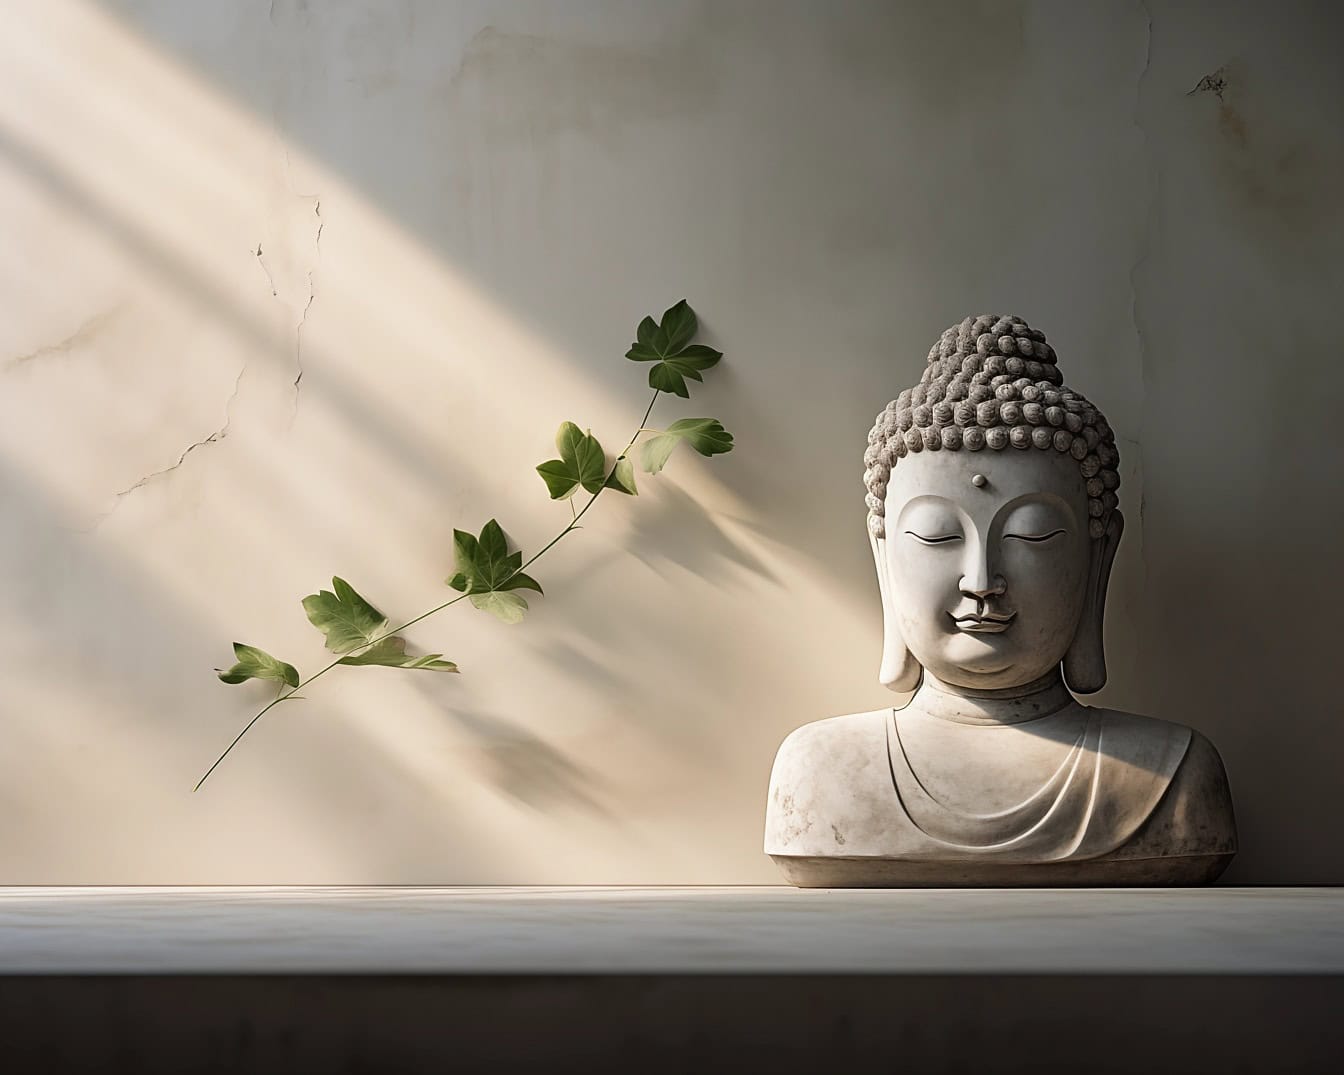 Statua di Buddha con gli occhi chiusi raffigurante una rilassante atmosfera Zen trascendentale